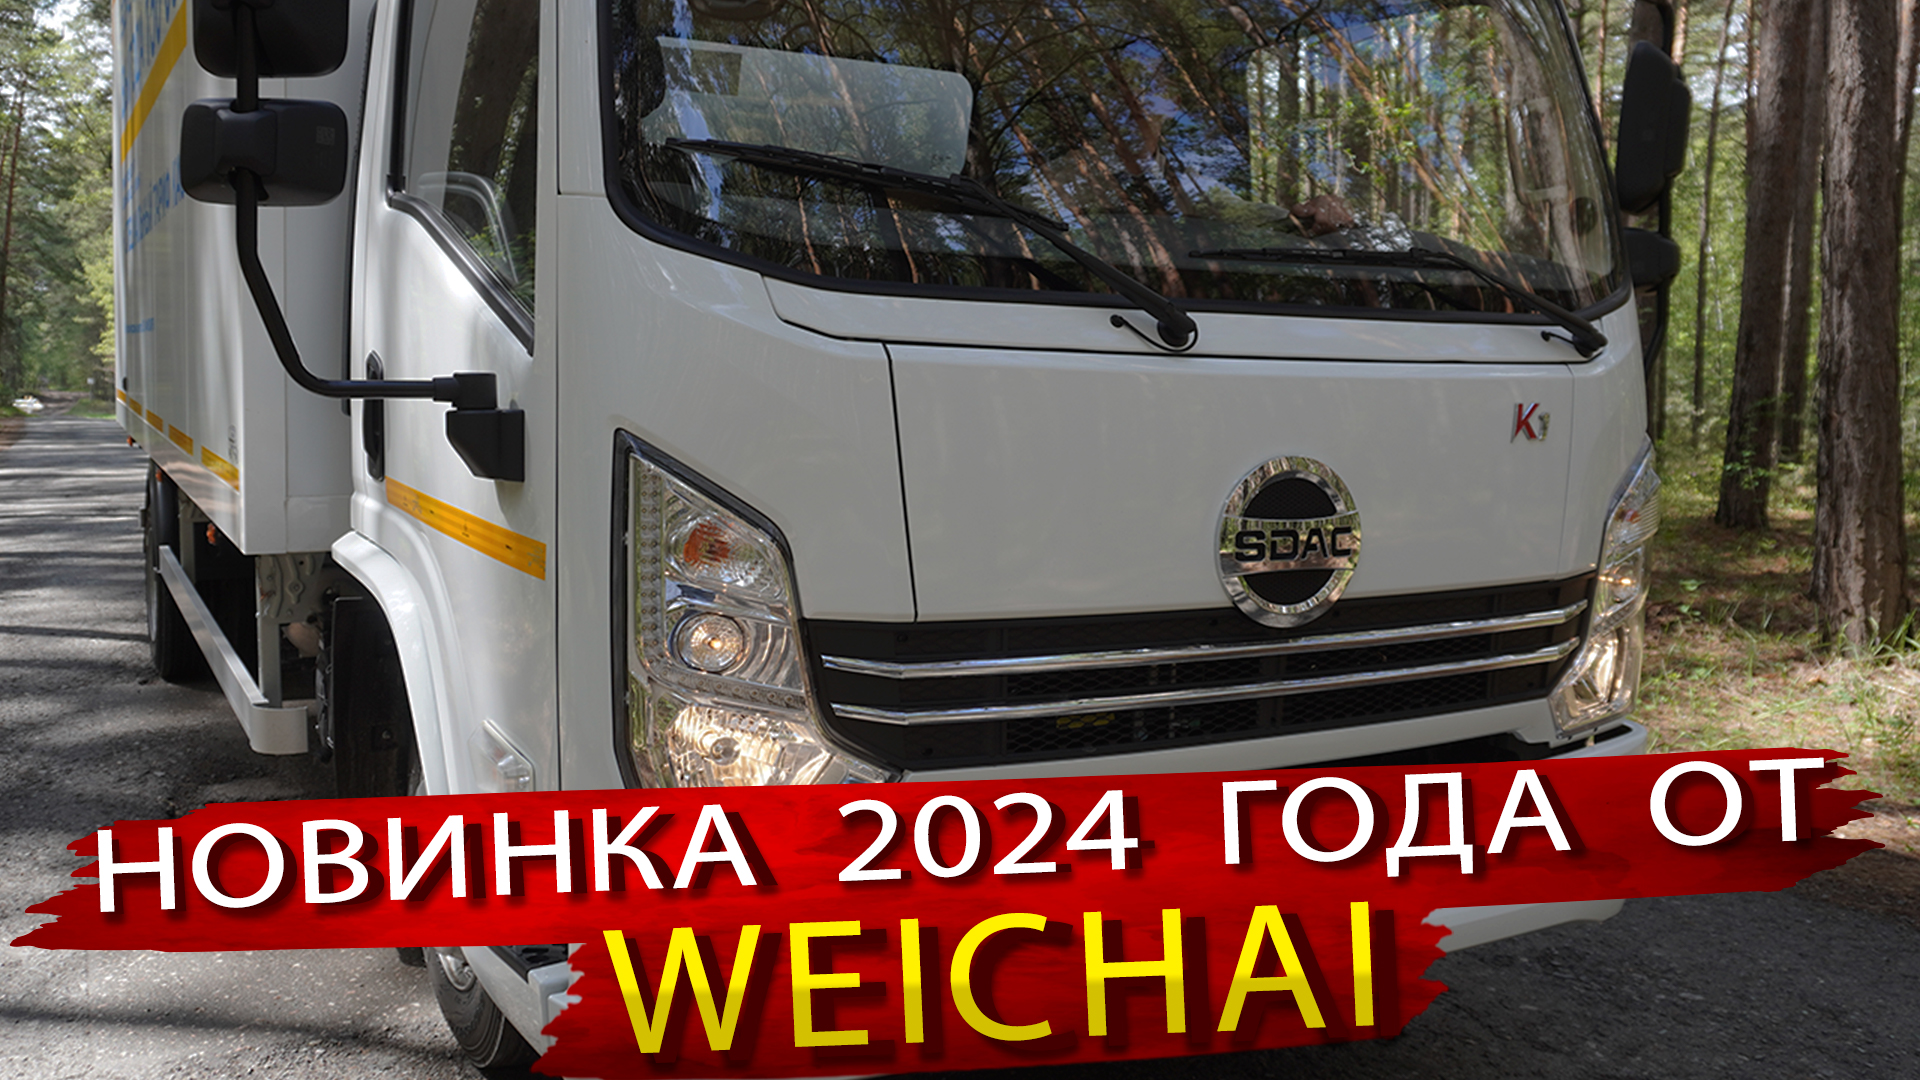 Weichai выпустила свой грузовик. Автомобиль SDAC - Новинка 2024 года